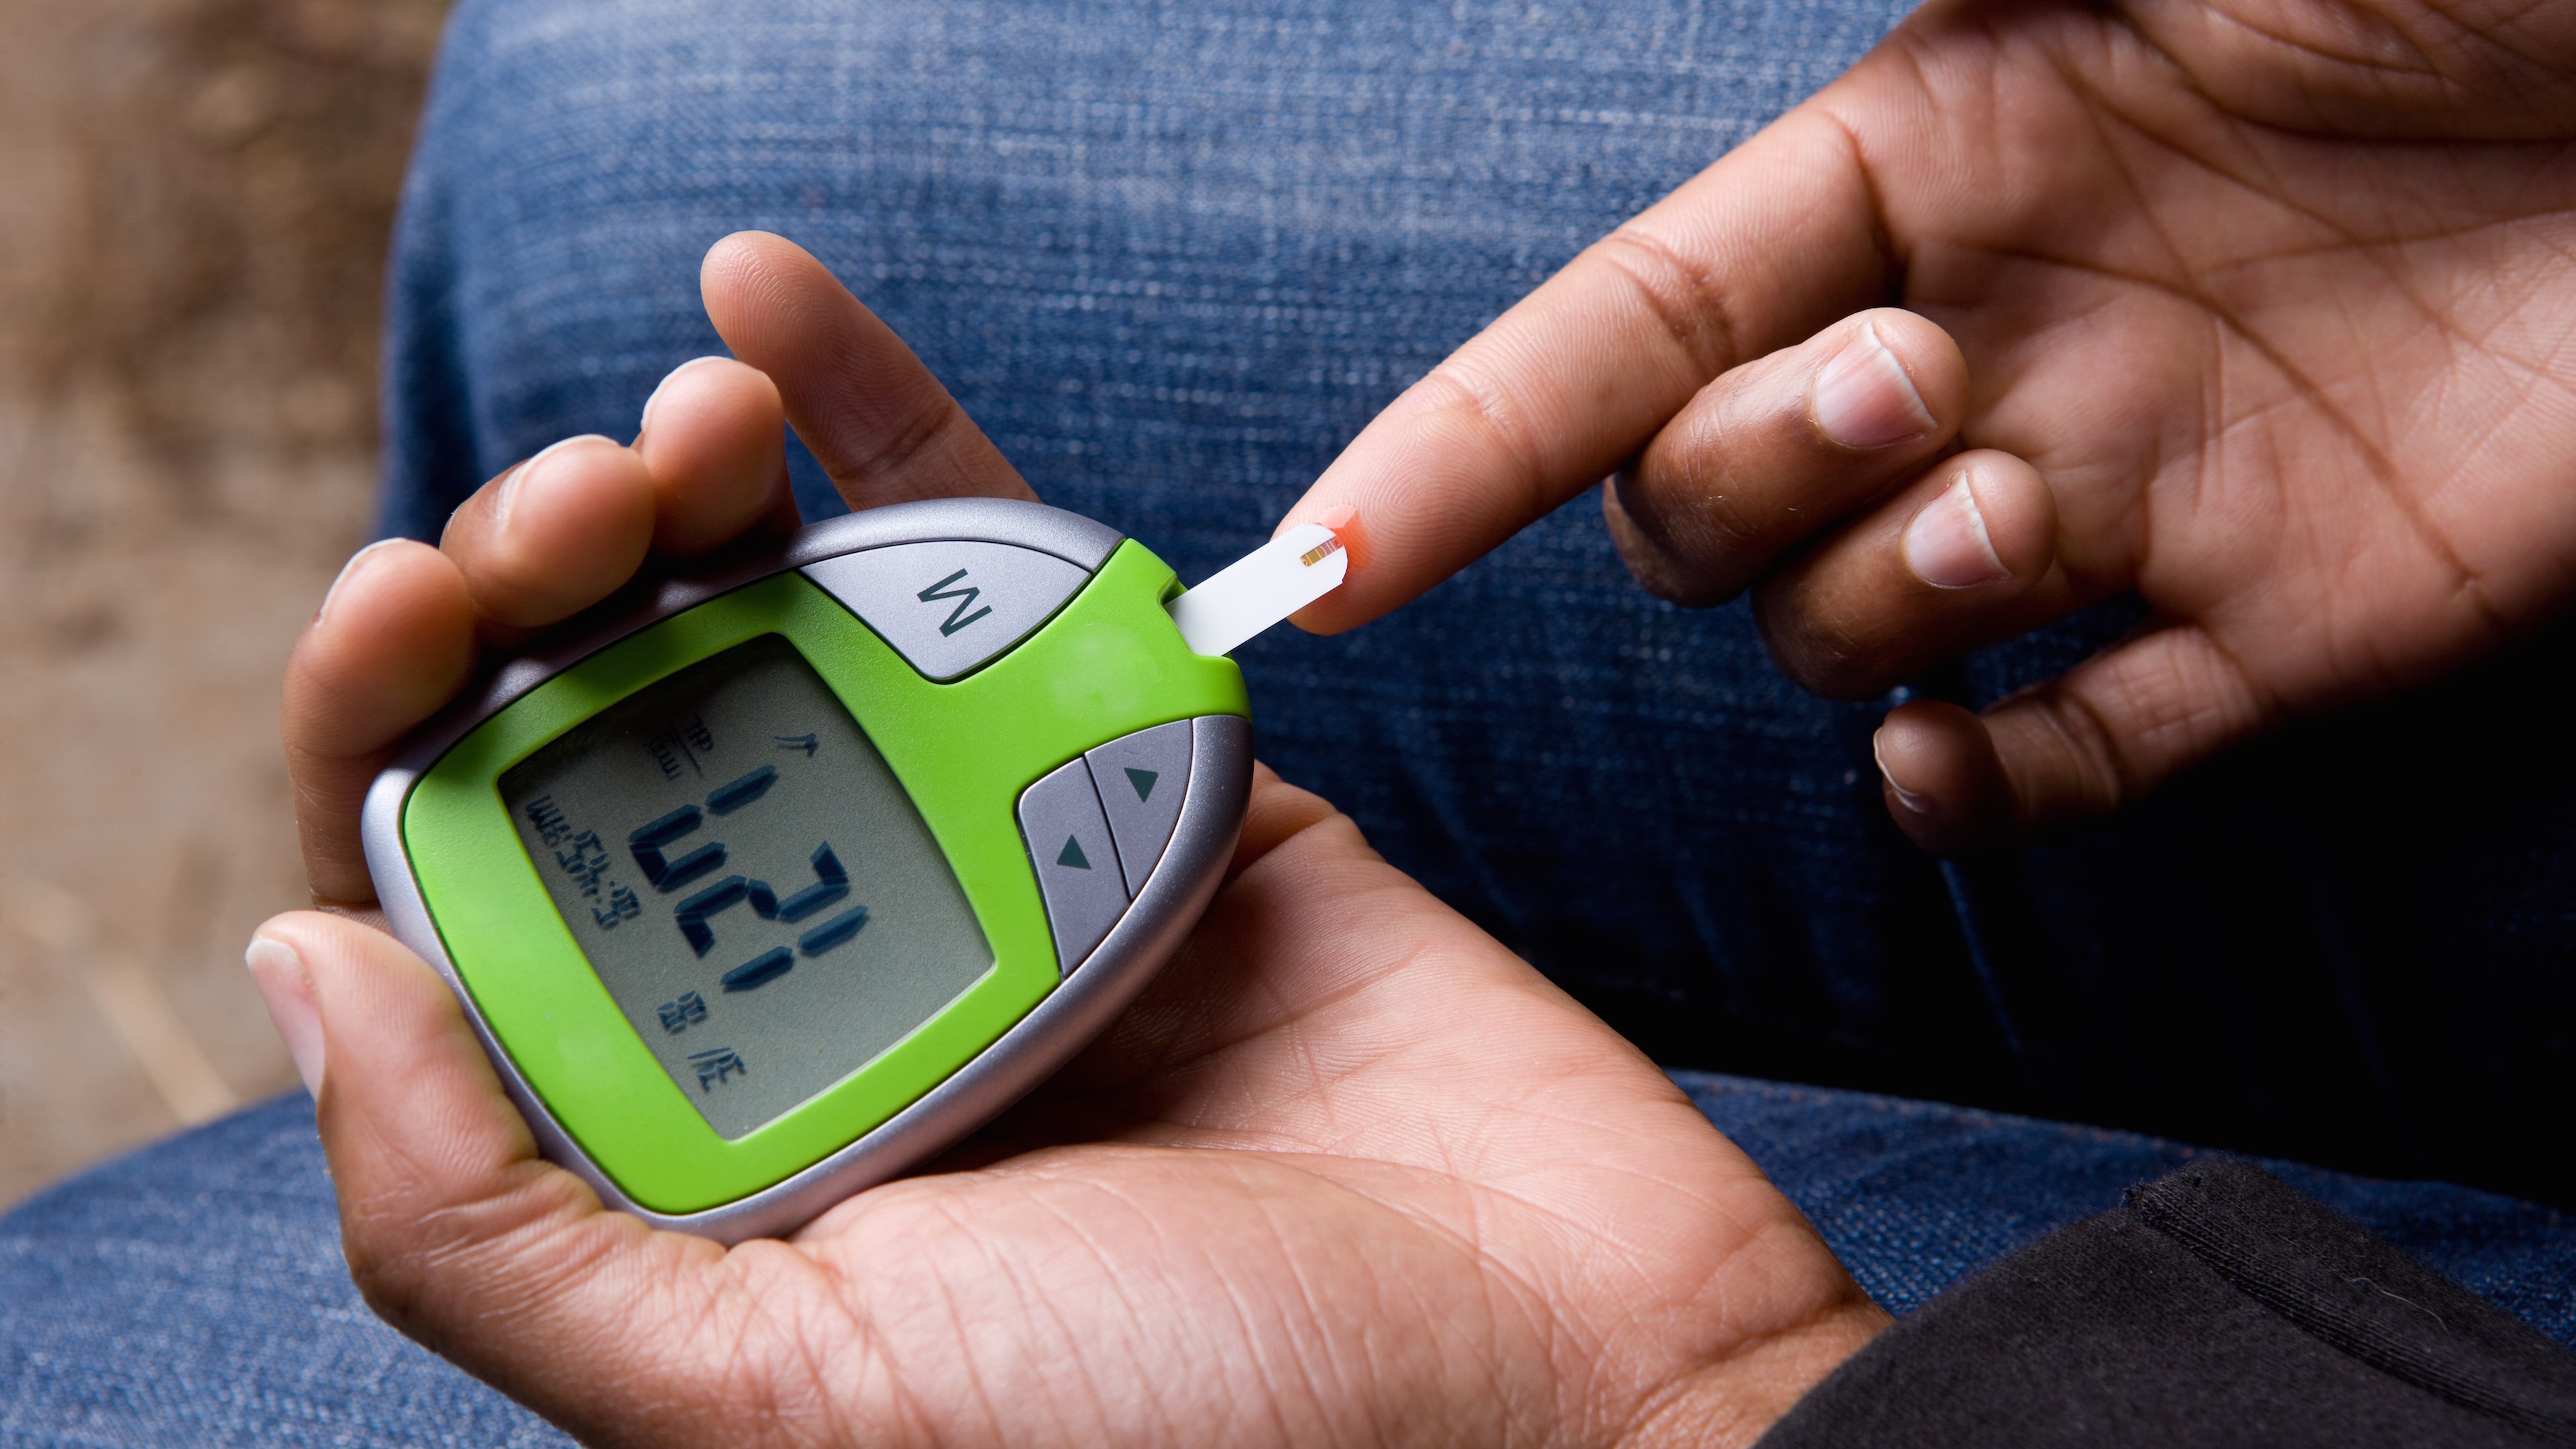 Samsung ve Apple, yeni akıllı saatlerine kan şekeri ölçüm özelliği eklemeye çalışıyor